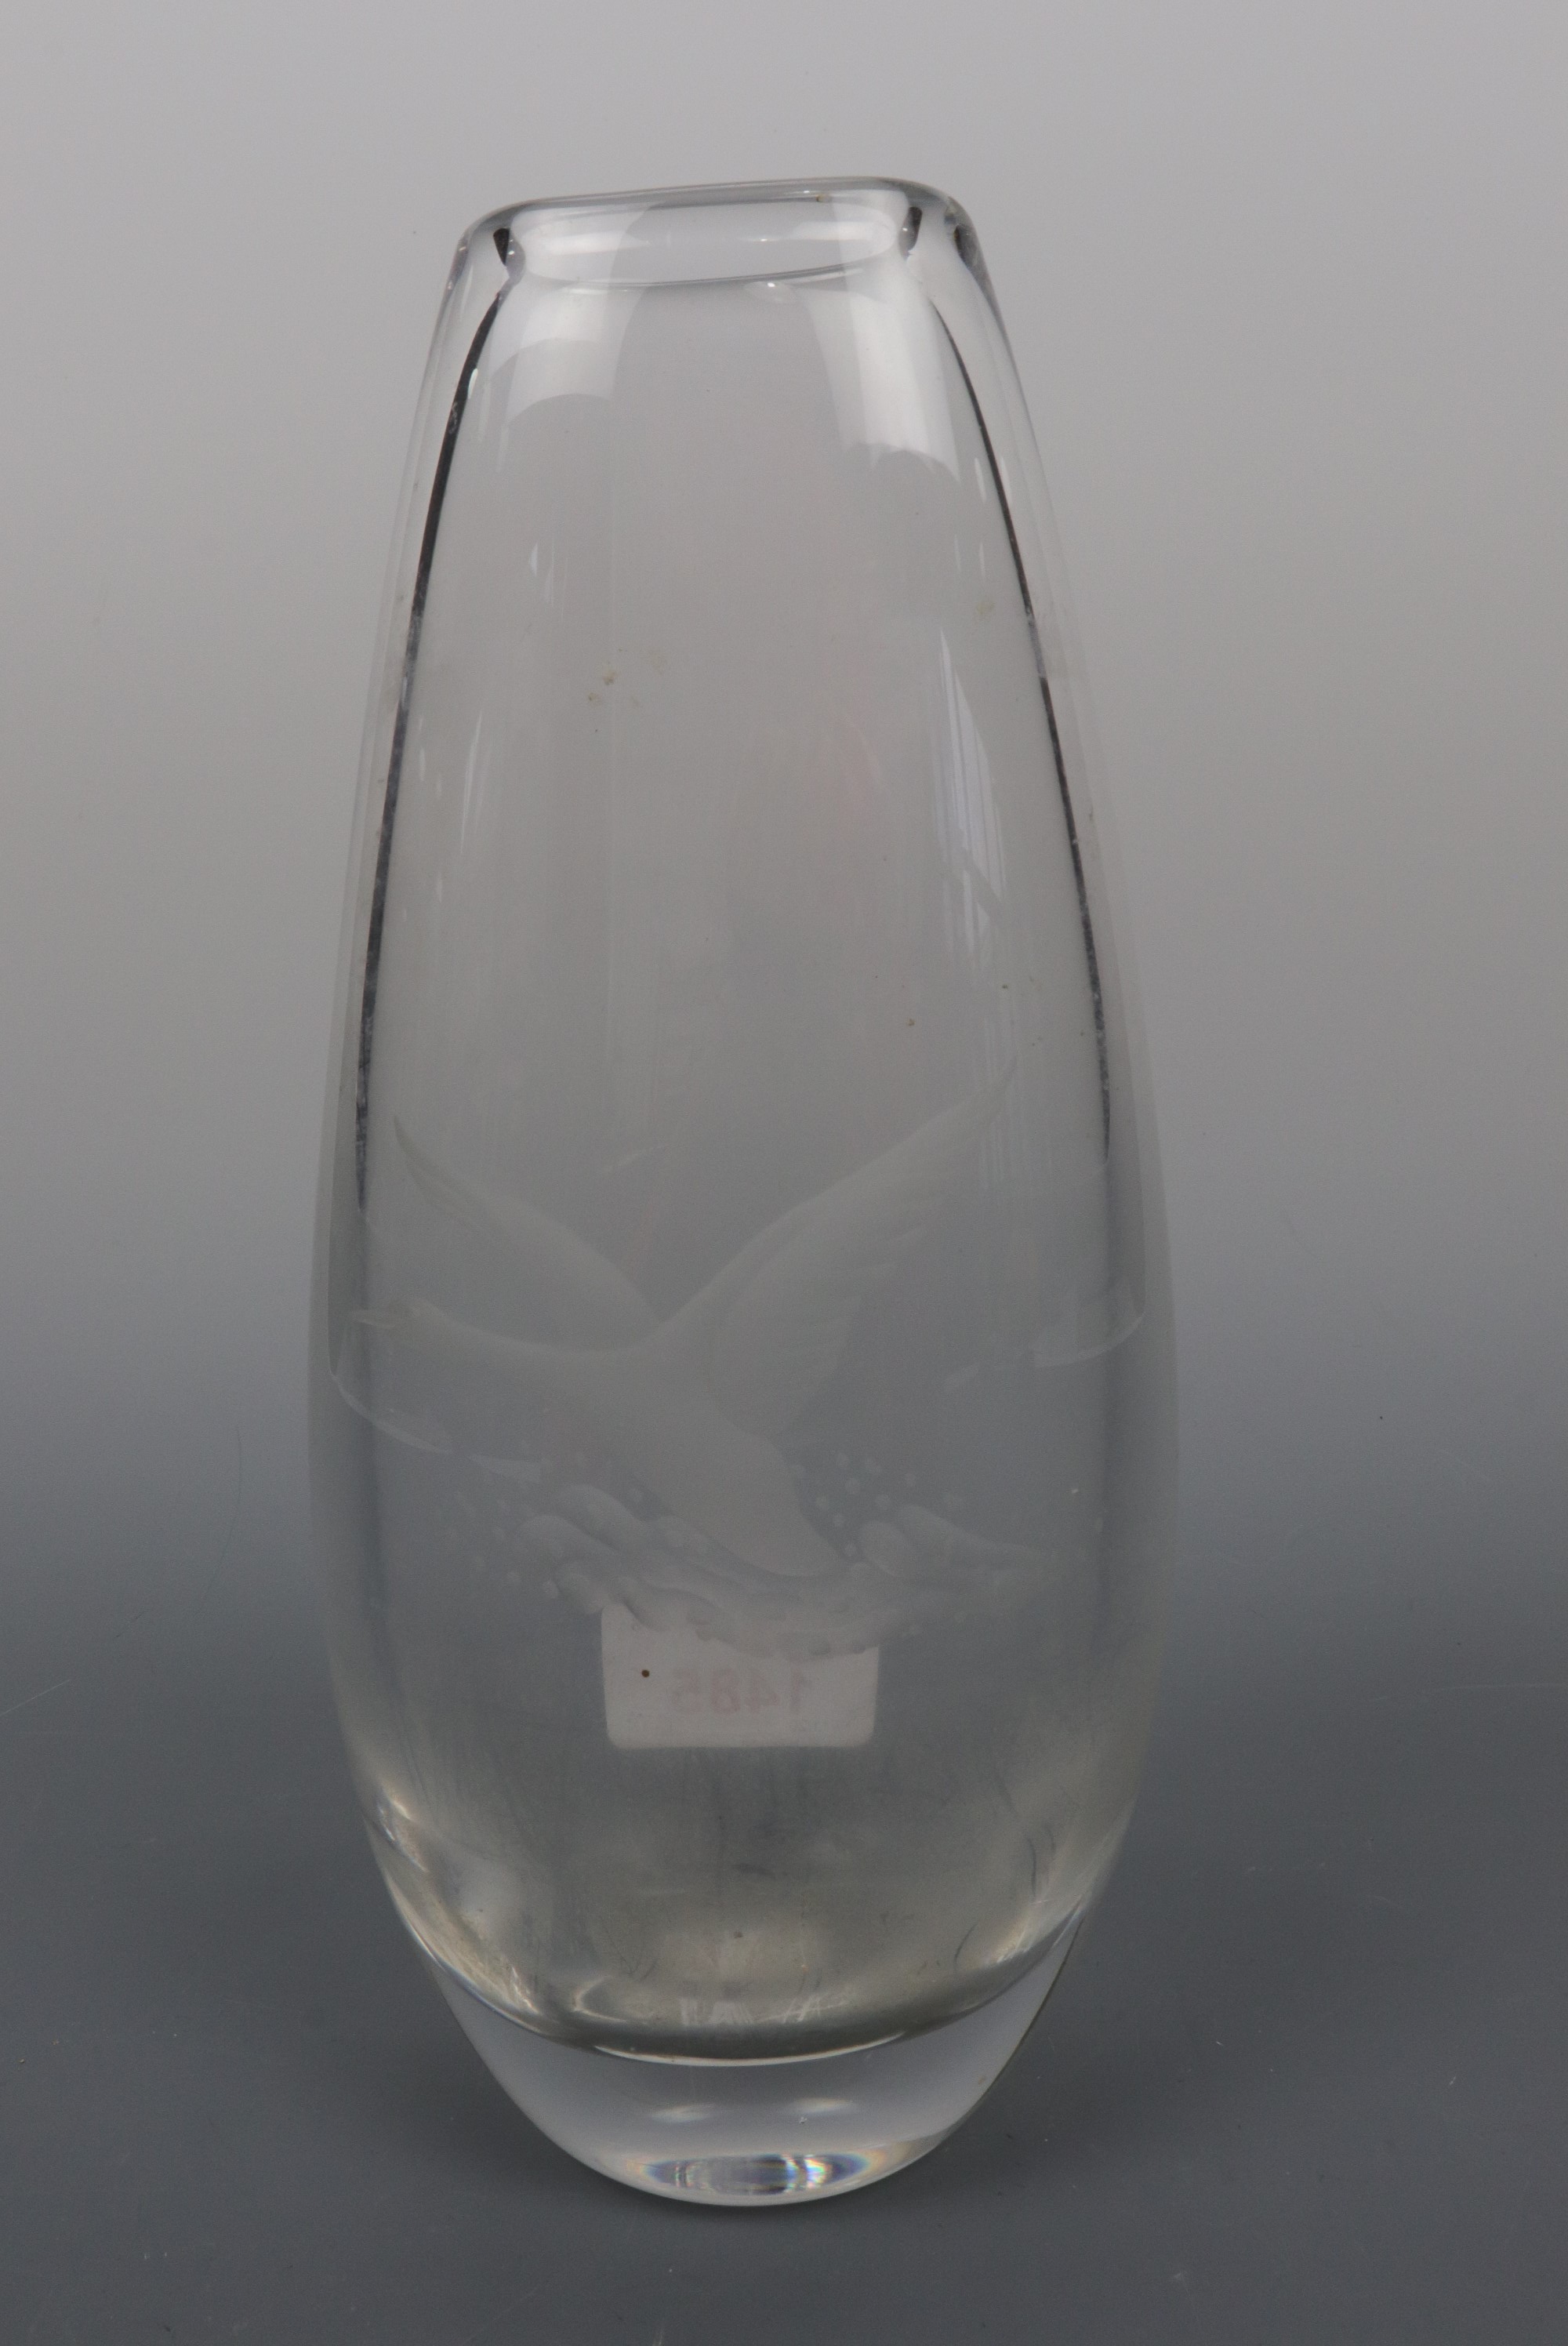 A Kosta etched tear drop vase, 21 cm high